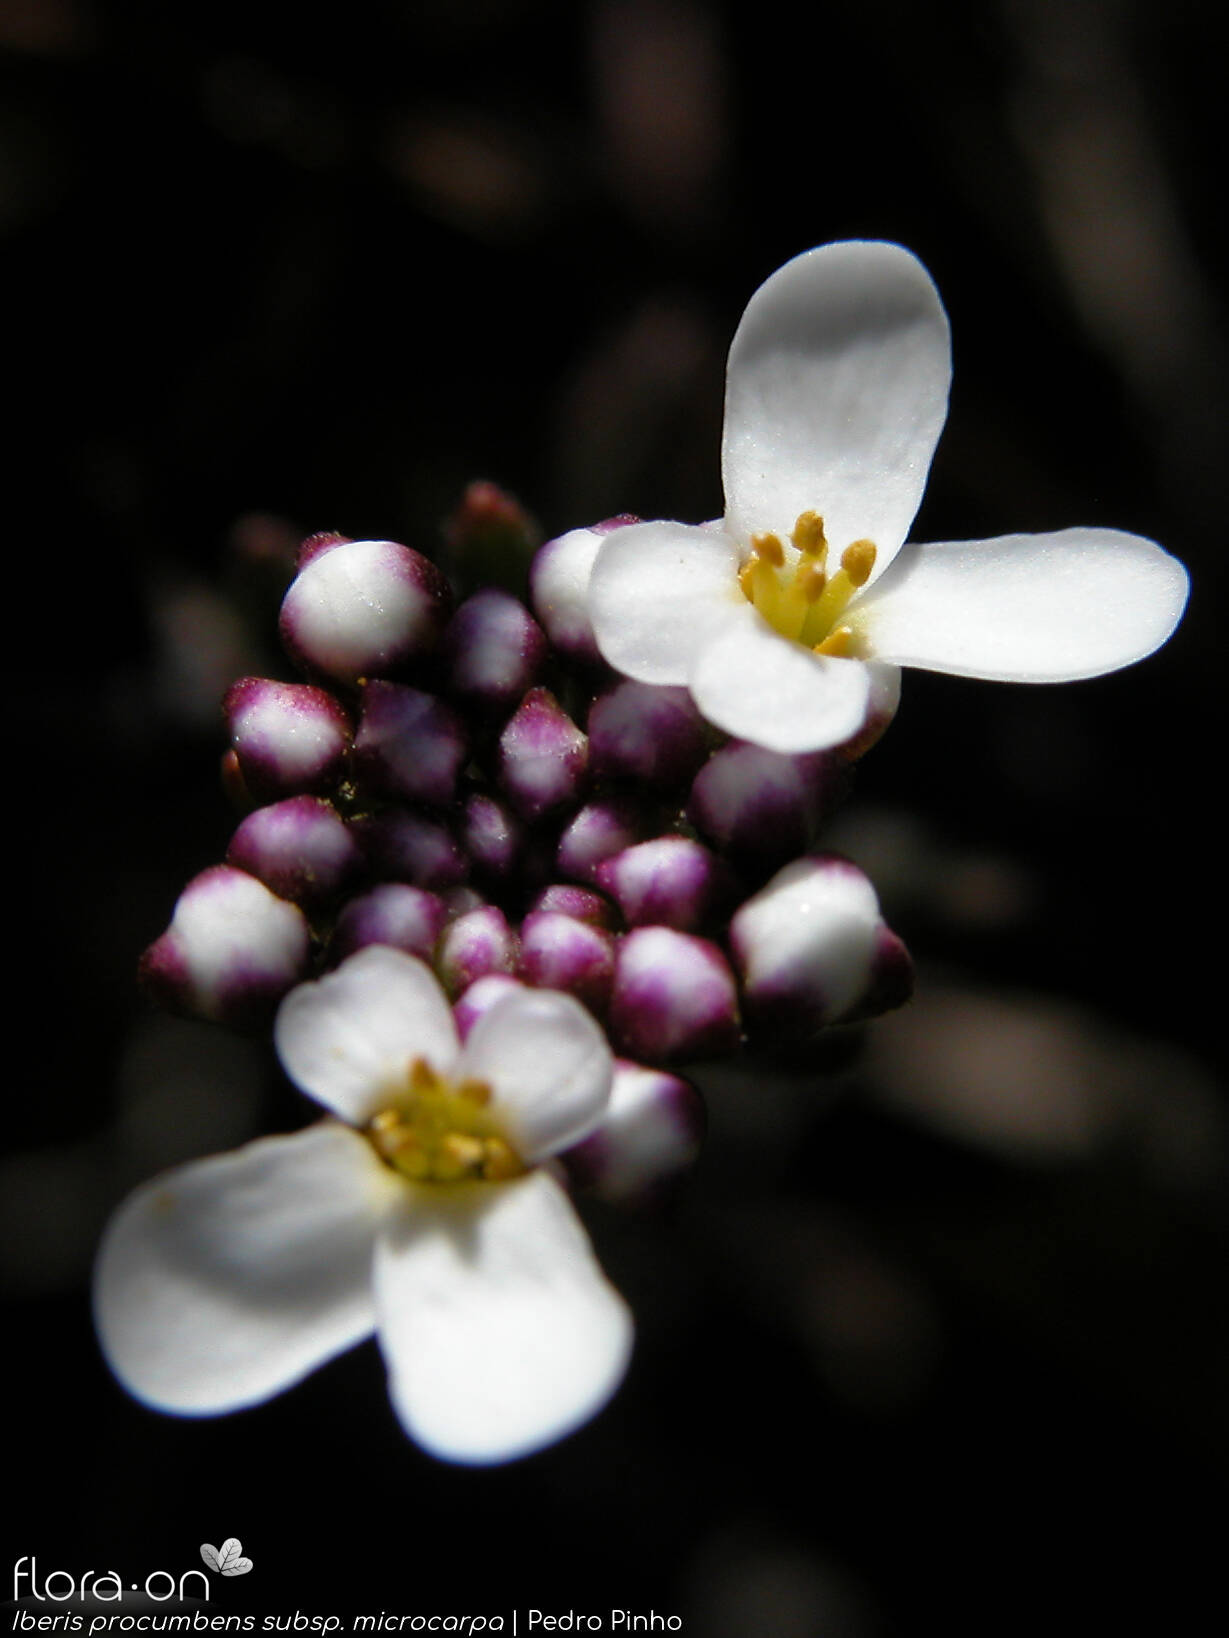 Iberis procumbens - Flor (close-up) | Pedro Pinho; CC BY-NC 4.0